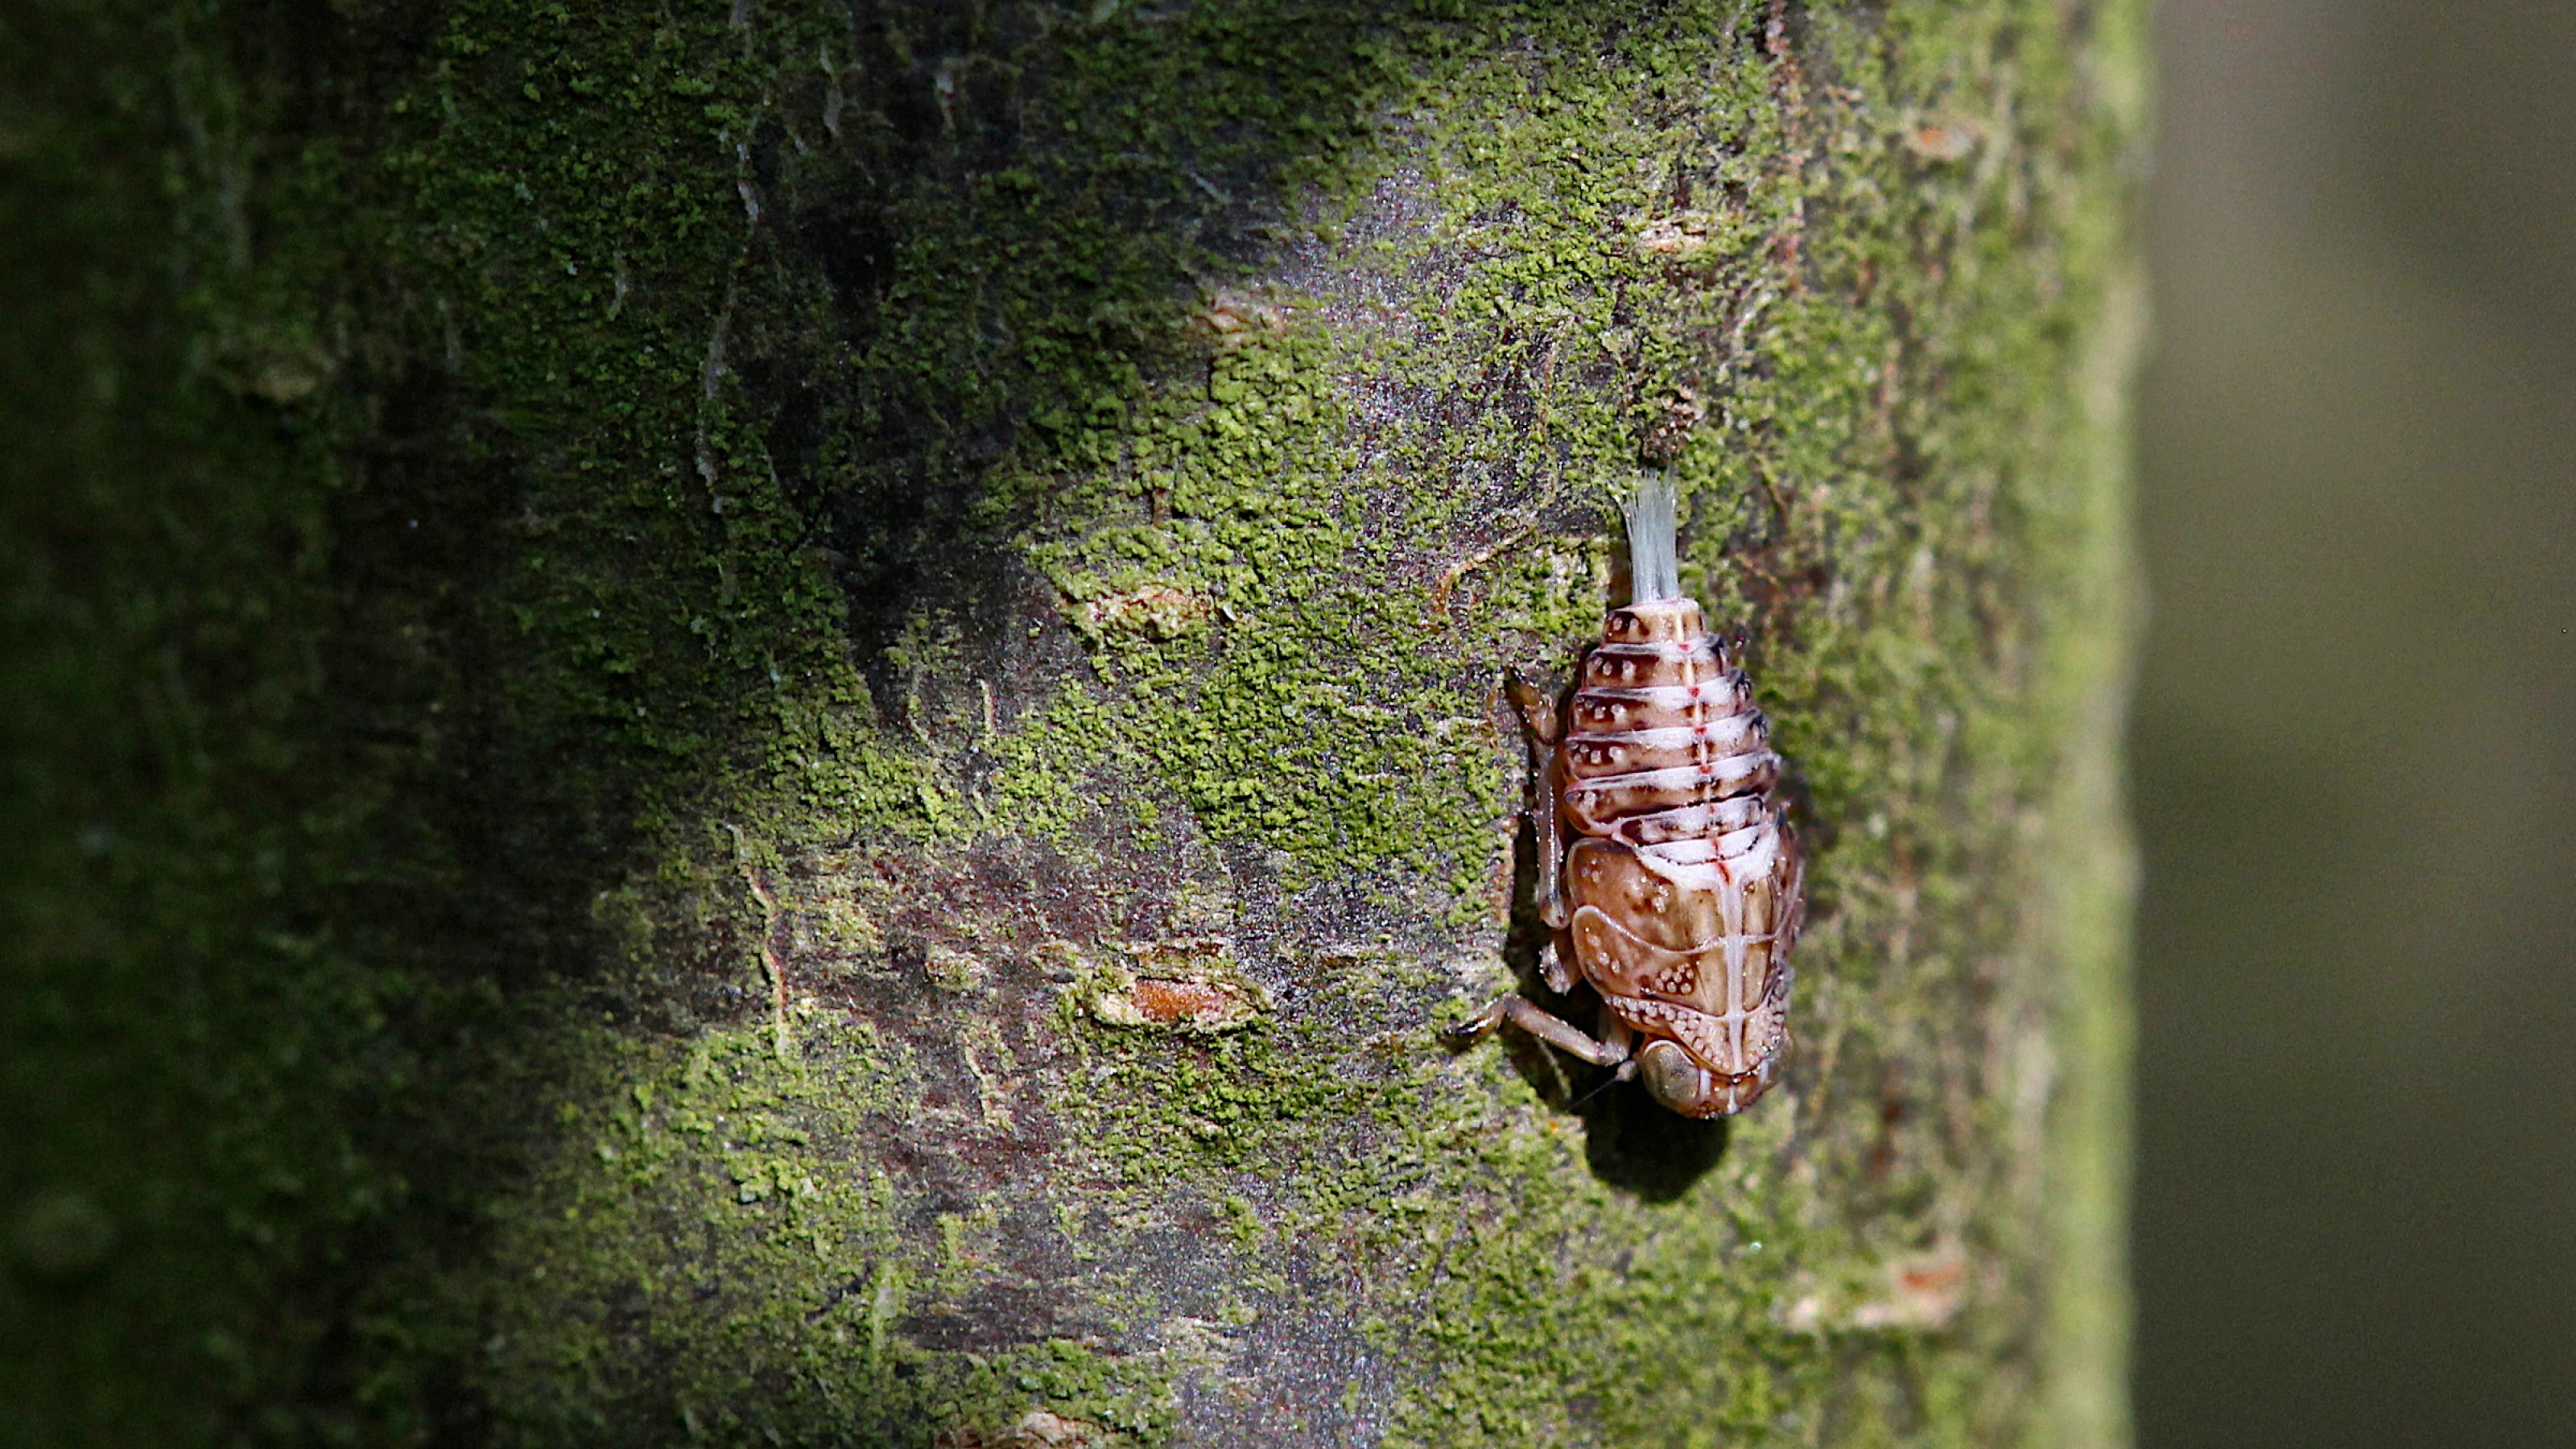 An einem grünlich bewachsenen Baumstamm sitzt kopfüber ein rötlich-braunes Insekt. Aus dem Hinterteil ragt eine pinselartige, weiß-bläuliche Struktur.